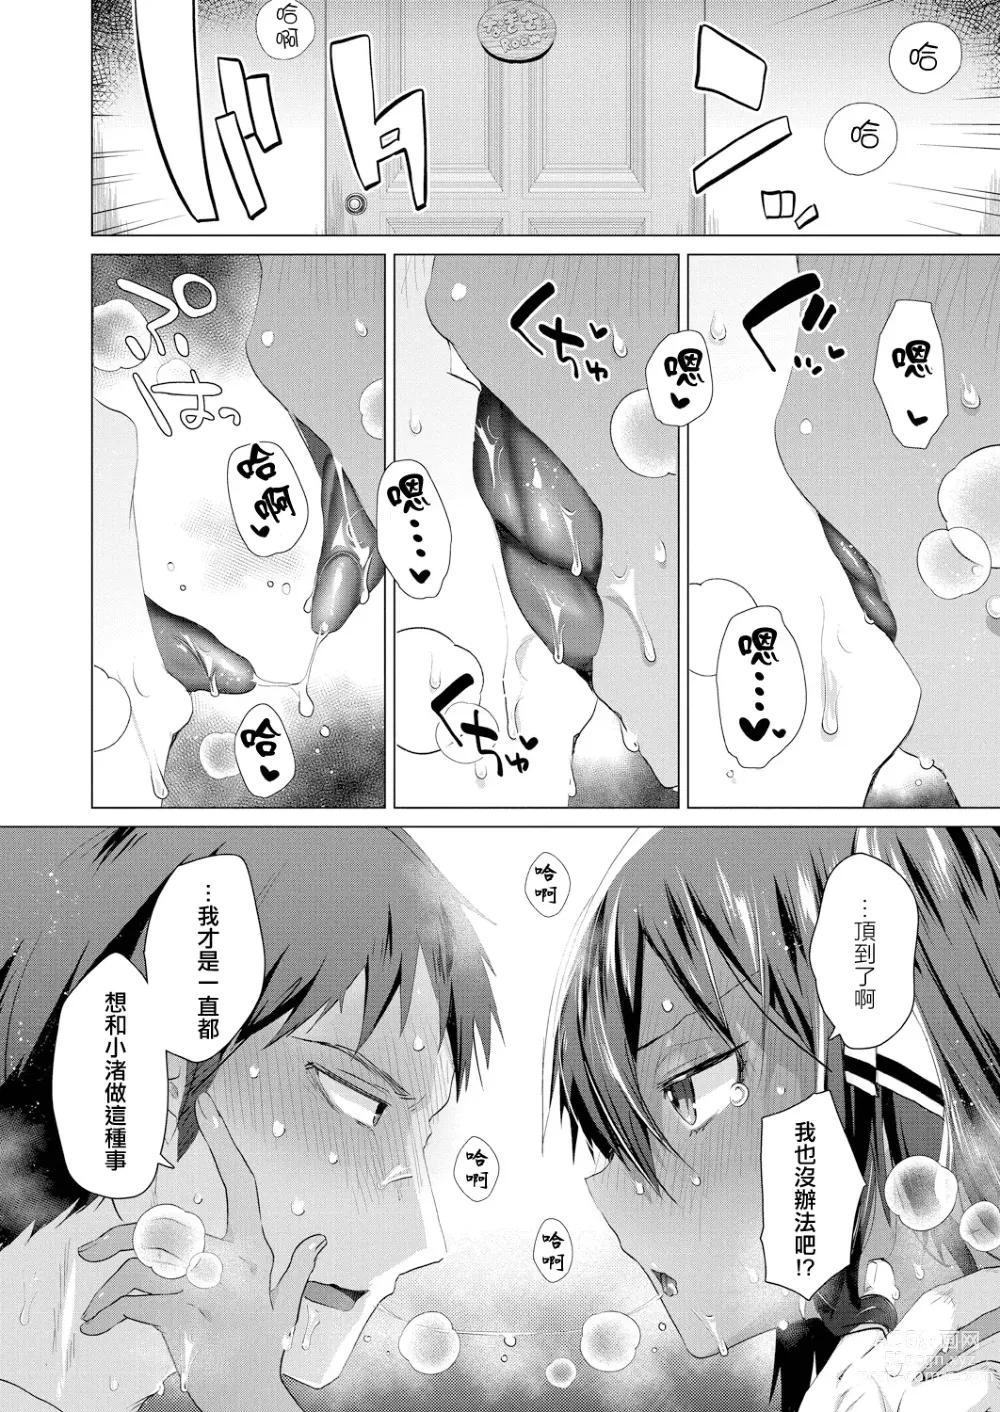 Page 6 of manga Komugiiro no Natsutachi Ch. 2